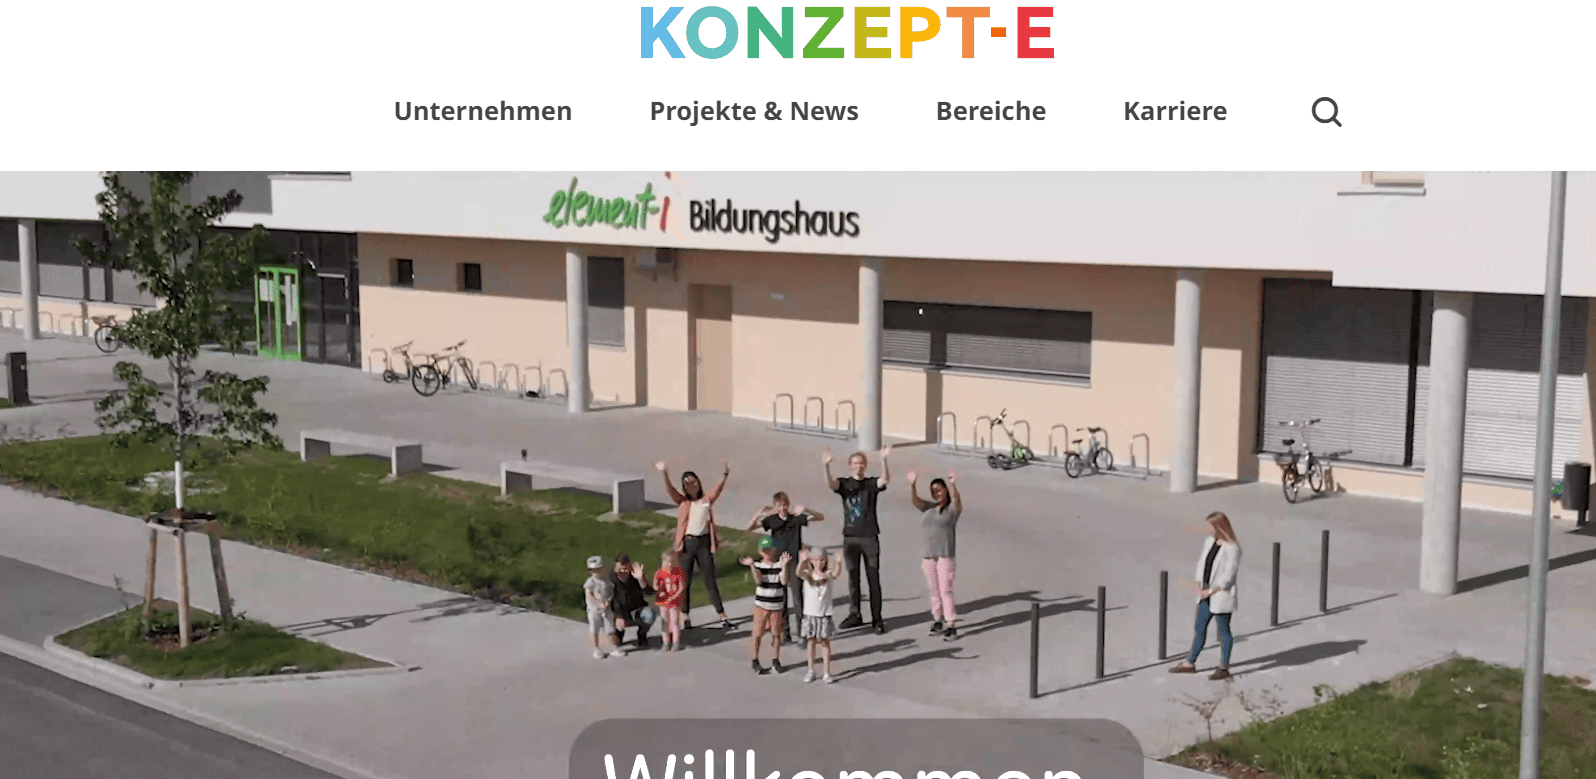 Marken-Relaunch: KONZEPT-E im Zeichen der Vielfalt